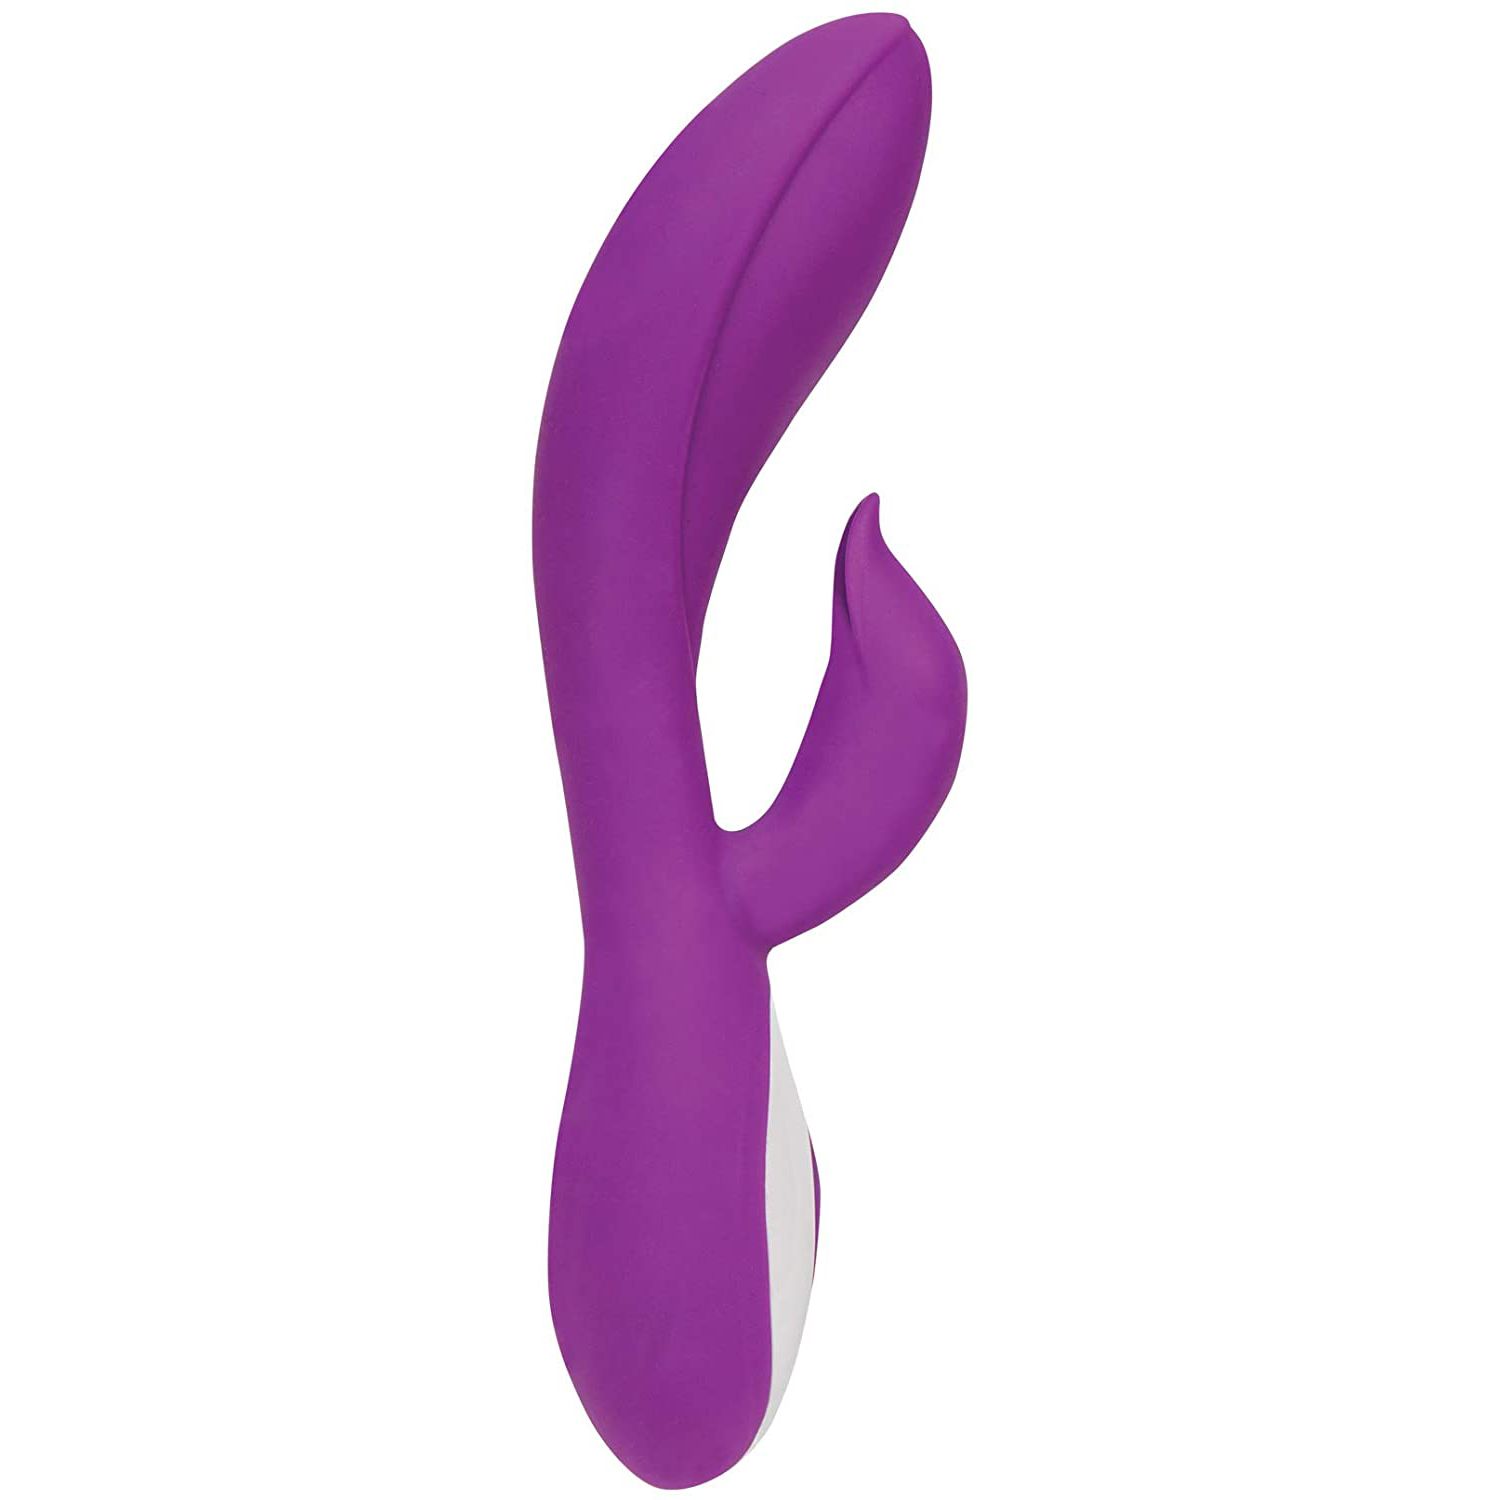 pure love g spot silicone rabbit vibrator in purple